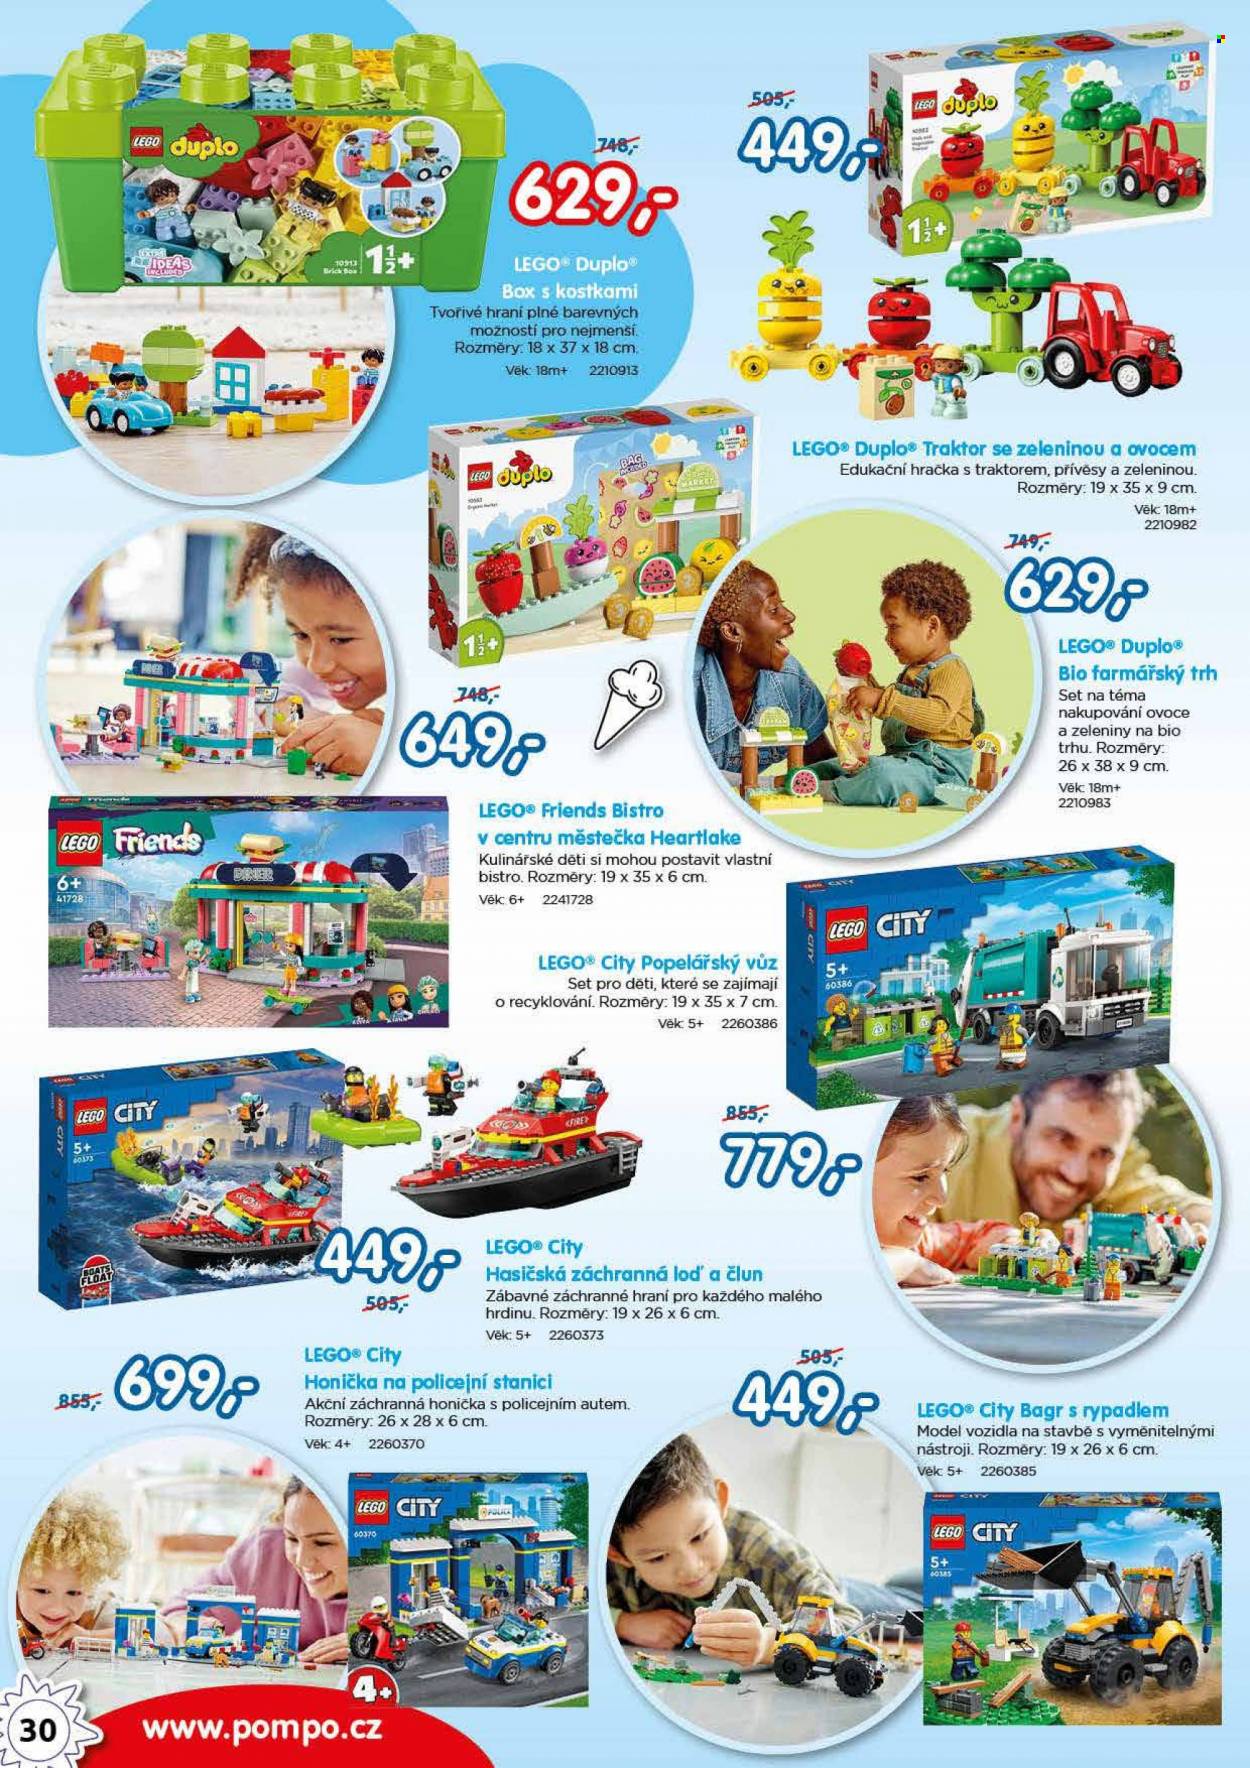 thumbnail - Leták Pompo - Produkty v akci - popelářský vůz, LEGO, LEGO City, LEGO Duplo, LEGO Friends, stavebnice, traktor, bagr, hračky, edukativní hračka. Strana 30.